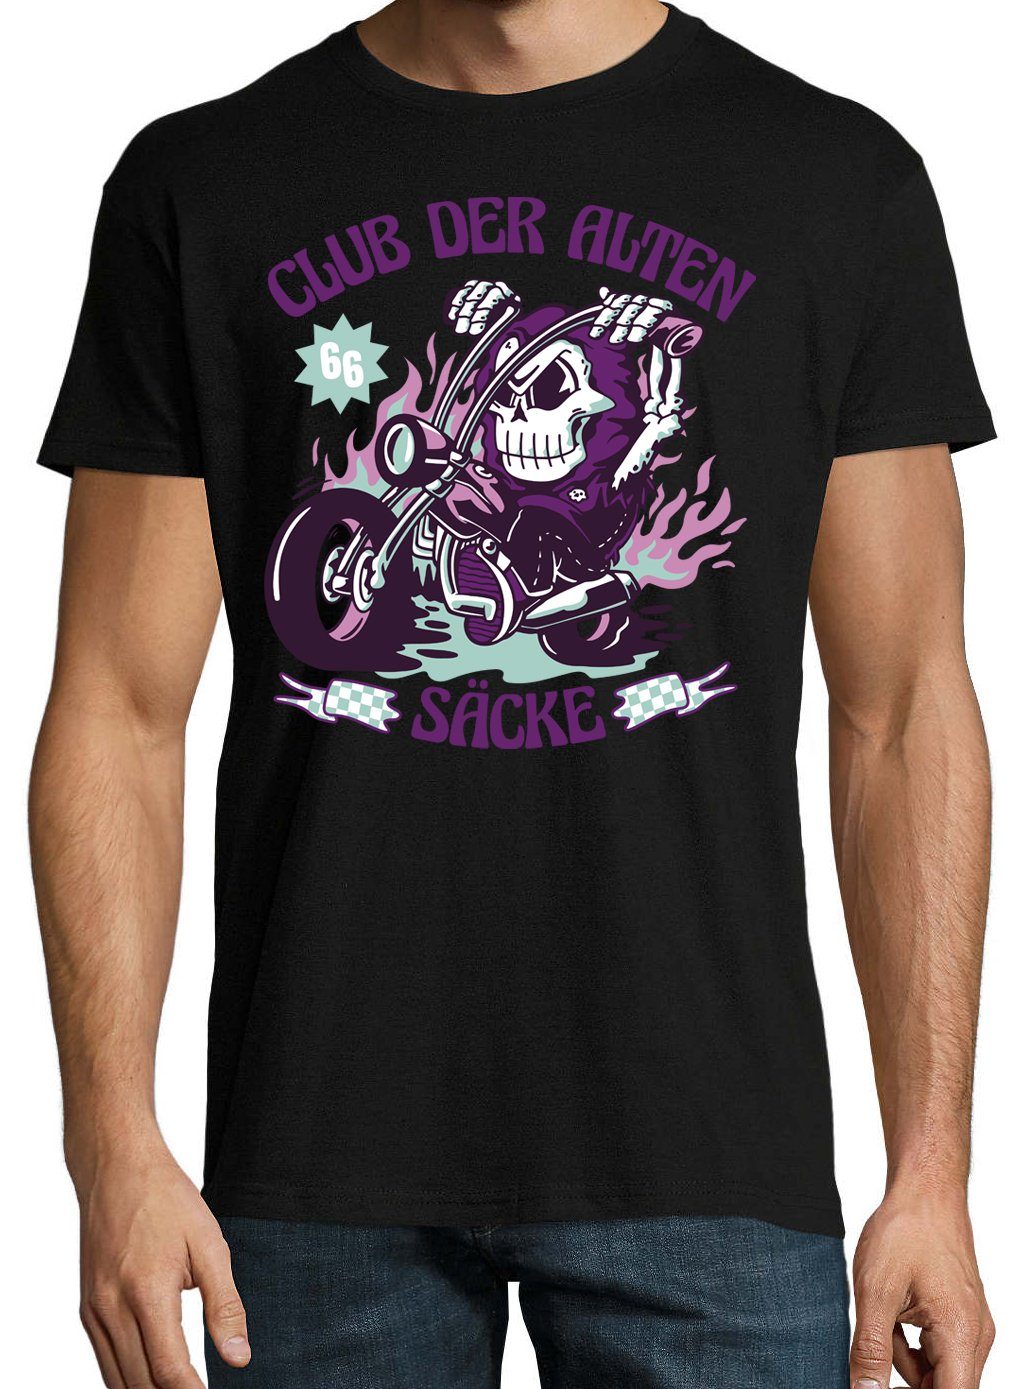 Youth Alten Schwarz Biker Säcke Frontprint Shirt Designz Der T-Shirt mit lustigem Club Herren